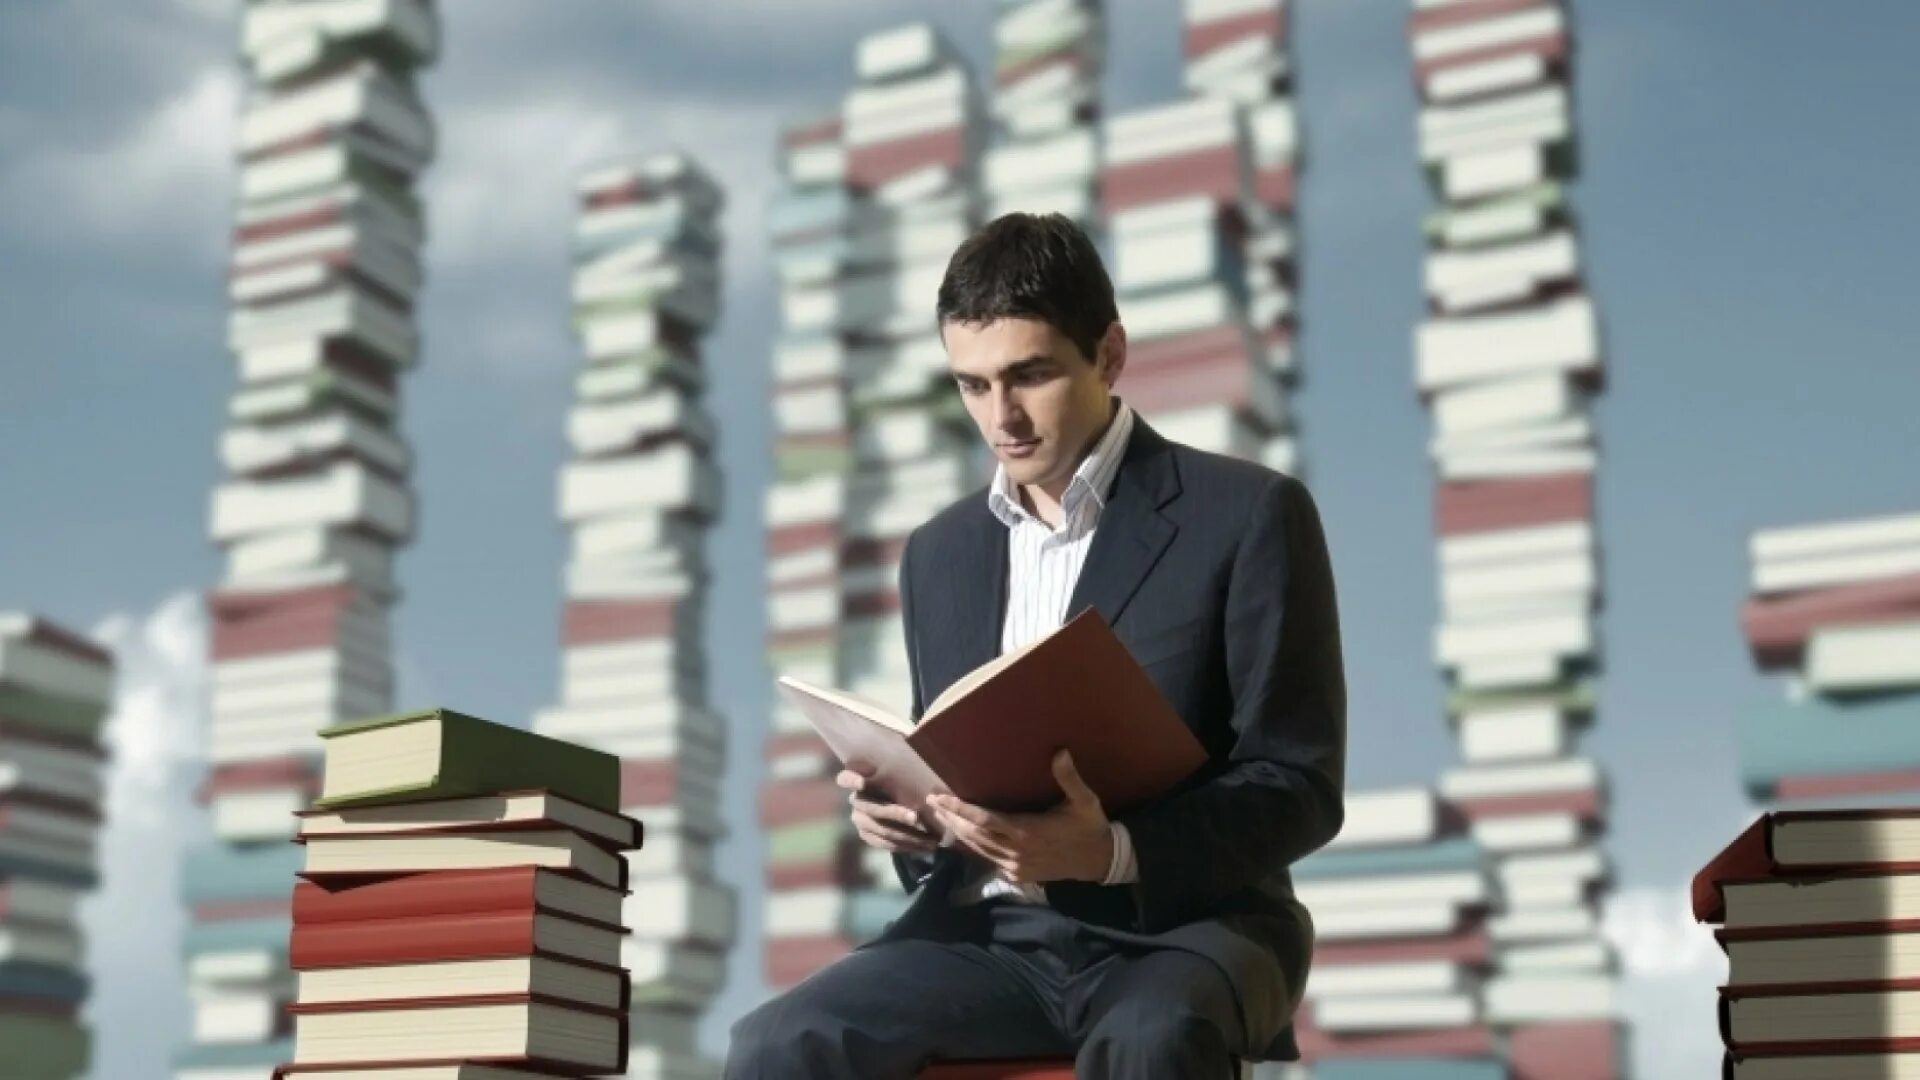 Шестьюстами книгами. Книга человек. Человек с книжкой. Чтение людей. Человек читает.